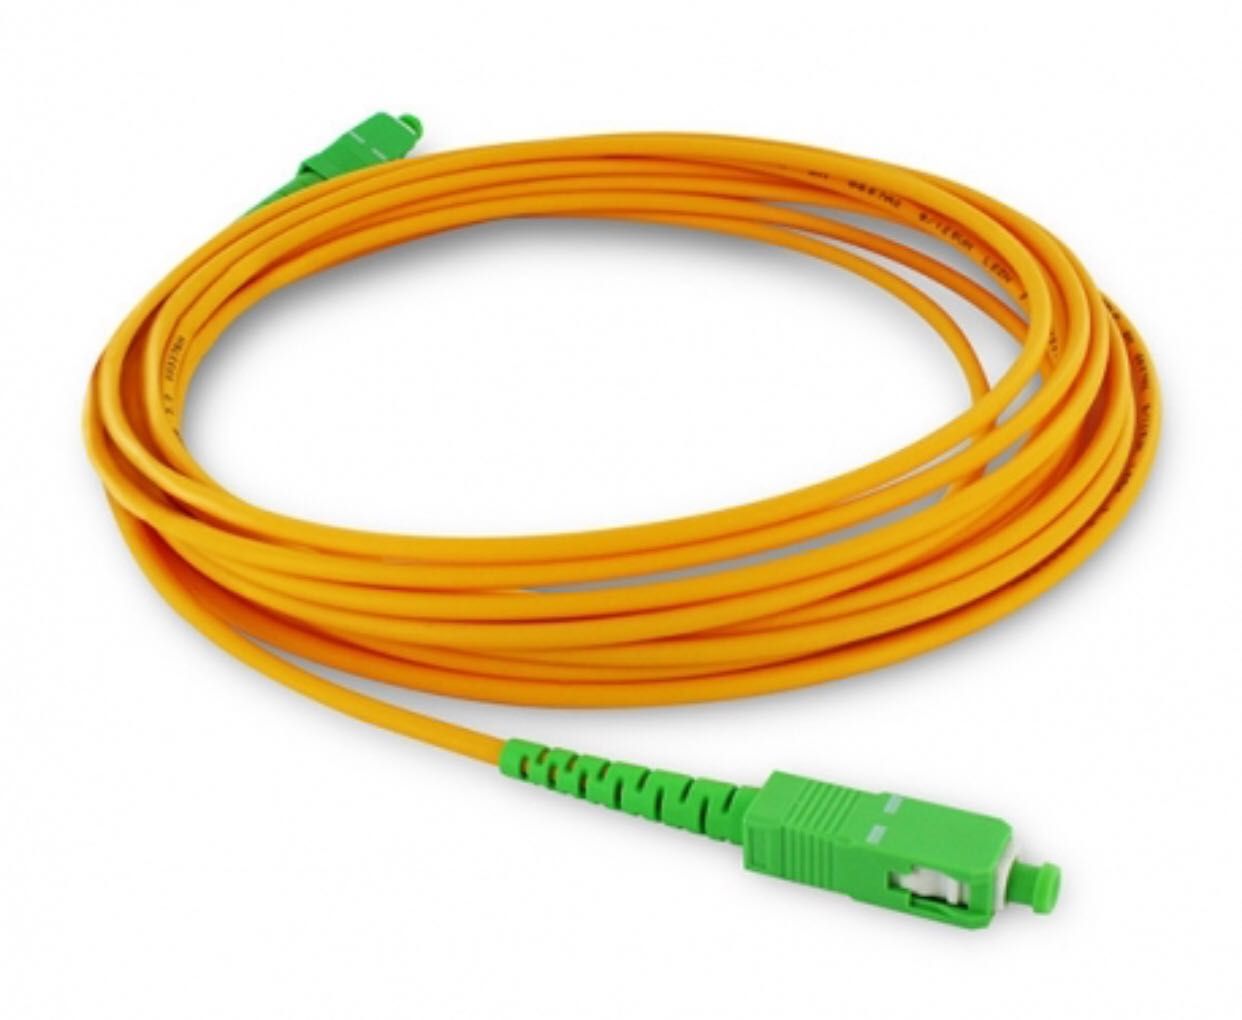 serviços de telefonia - fibra óptica - internet - cabeamento em geral